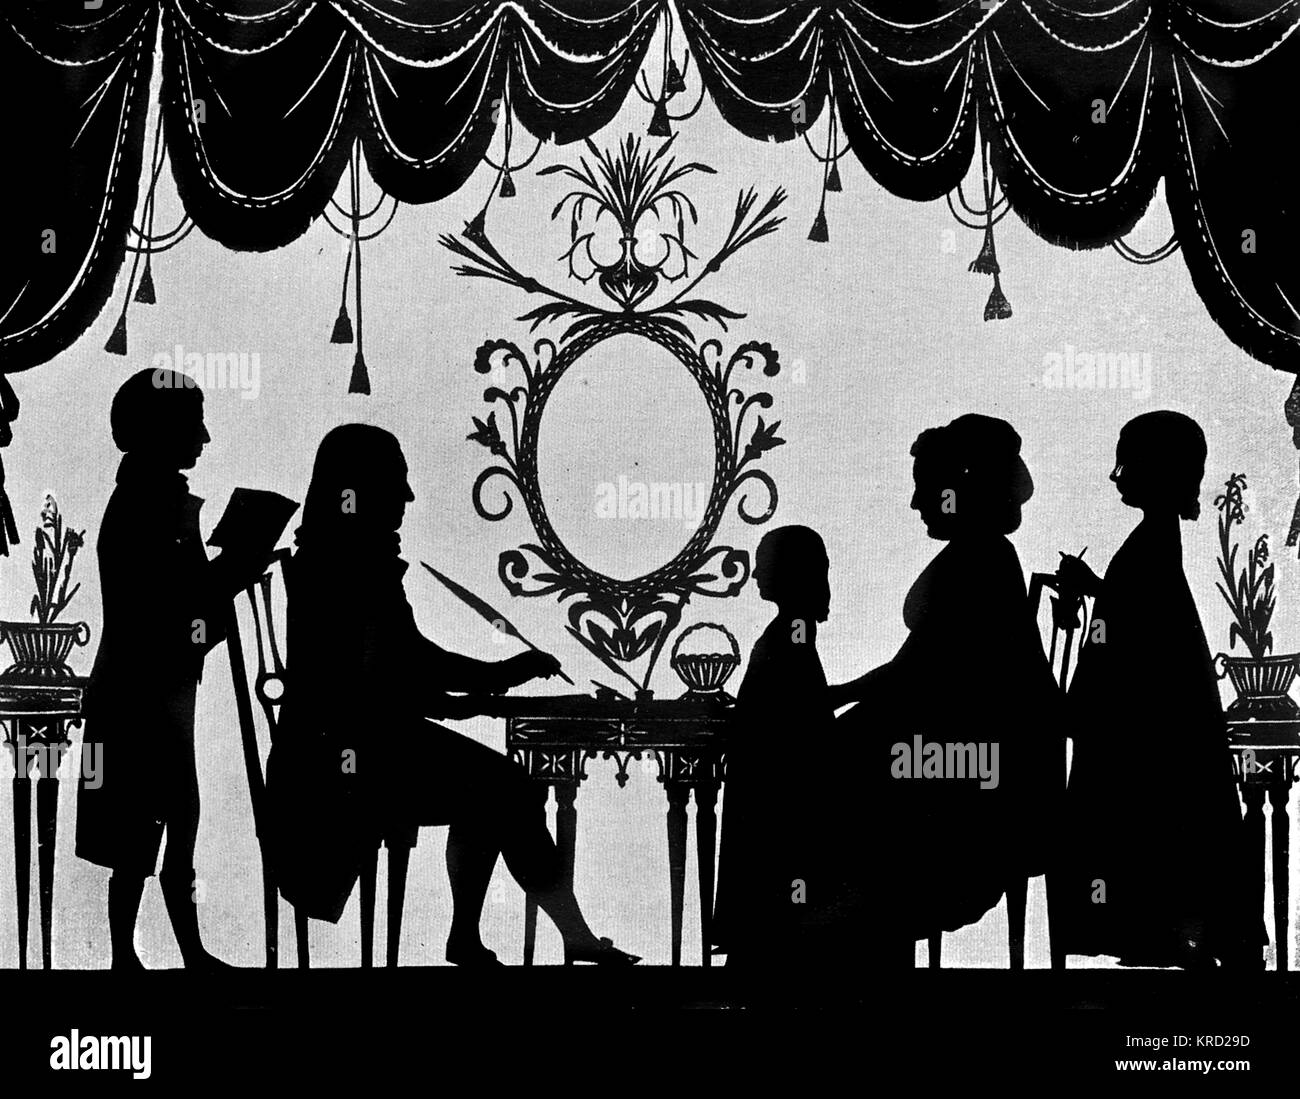 Eine silhouette Porträt des Burney Familie (möglicherweise, dass der musikalischen Historiker, Charles Burney?), dargestellt in einer zivilisierten Tableaux um einen Tisch mit gerafften Vorhängen Framing der Szene. Datum: C 1780 s Stockfoto